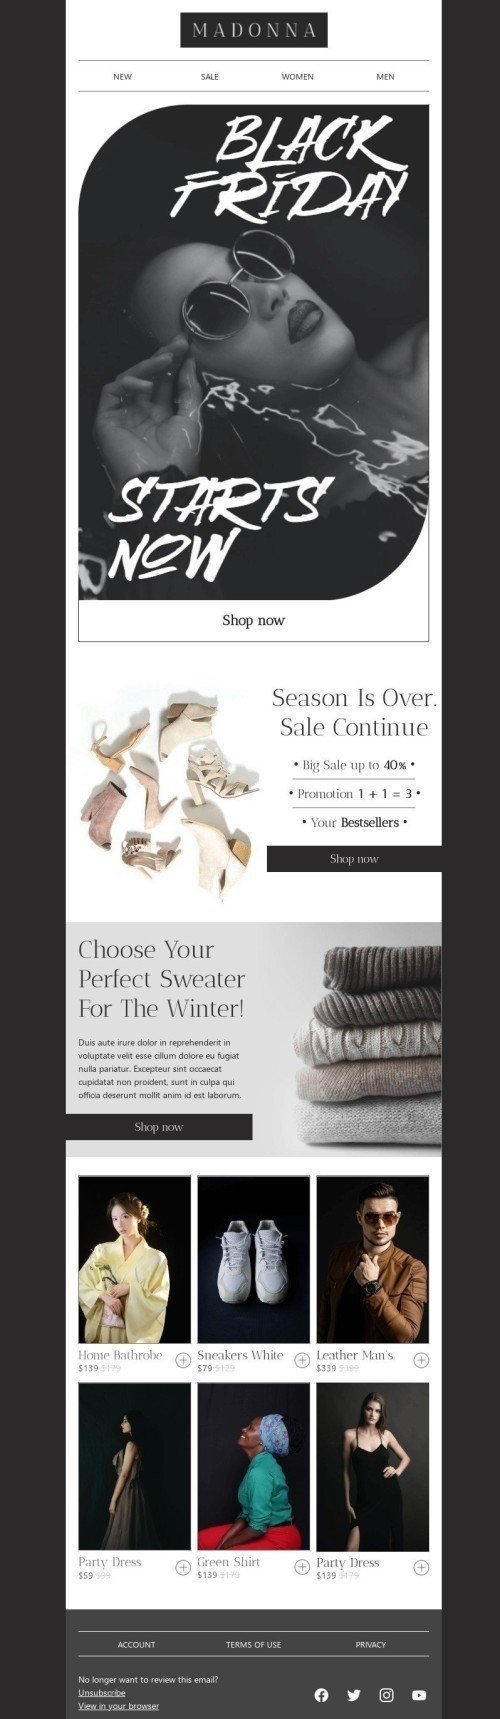 Plantilla de correo electrónico «Elige tu suéter perfecto» de Viernes Negro para la industria de Moda Vista de escritorio